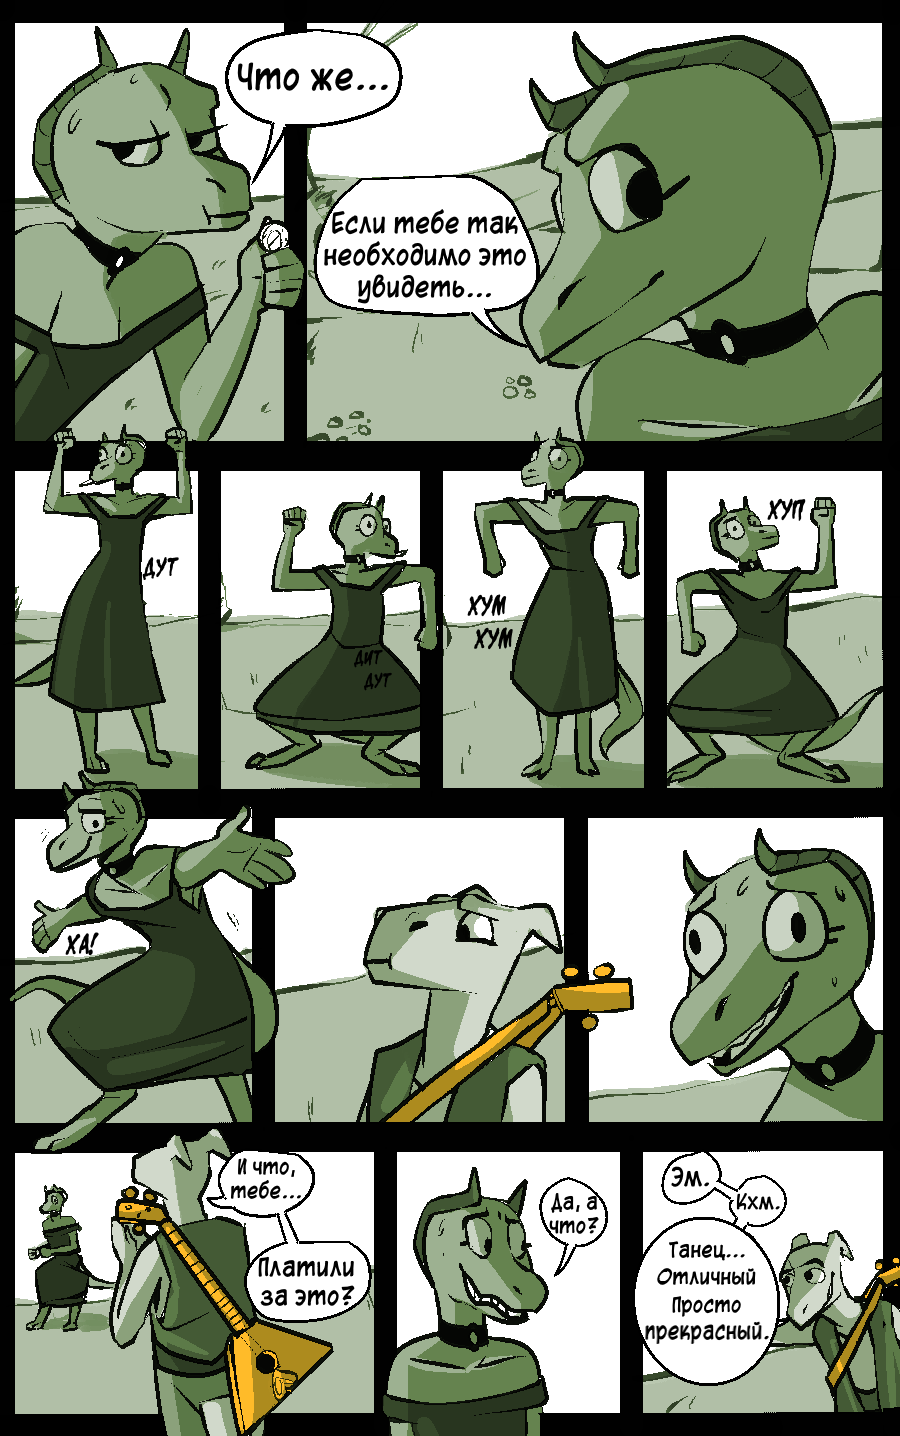 Комикс Отстойный рыцарь (trash knight): выпуск №130